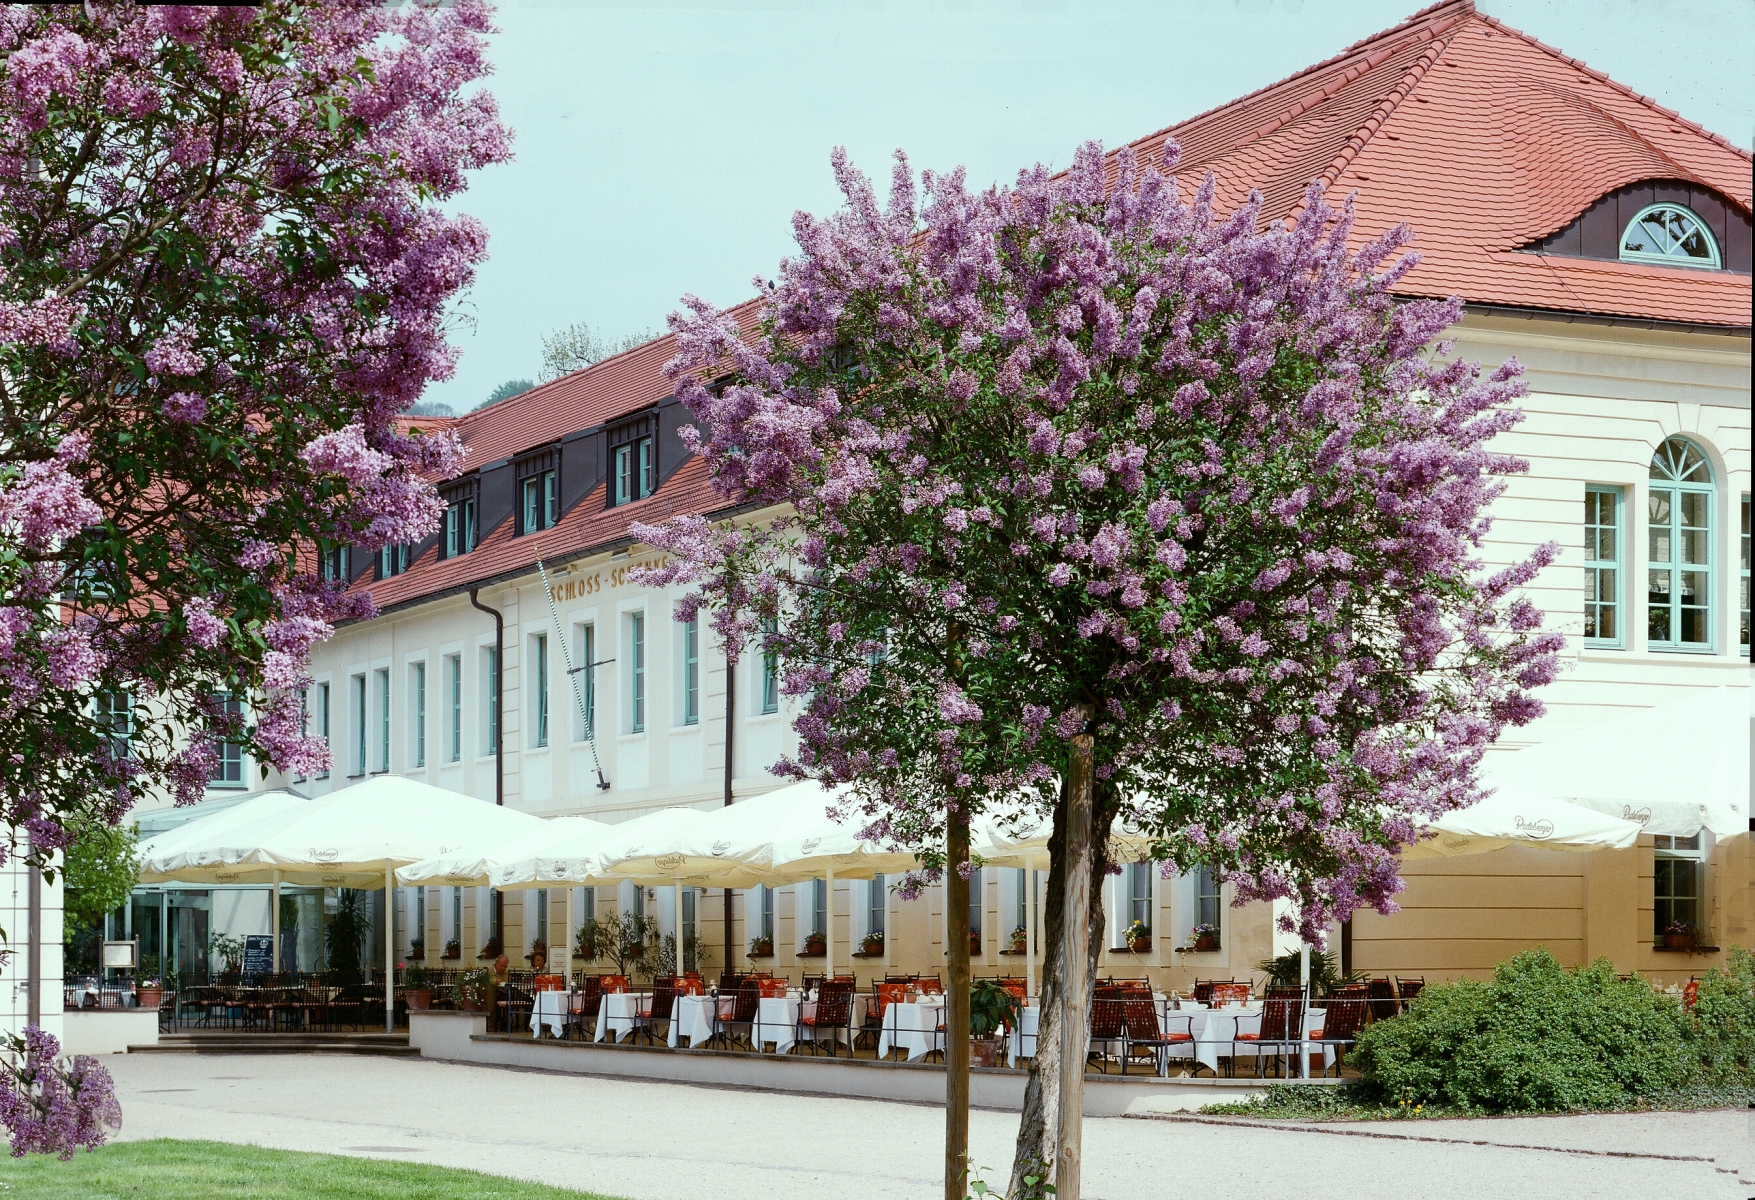 Schloss Hotel Dresden Pillnitz <br/>138.00 ew <br/> <a href='http://vakantieoplossing.nl/outpage/?id=ffe7d670ff8d1515b9e794e6a452184a' target='_blank'>View Details</a>